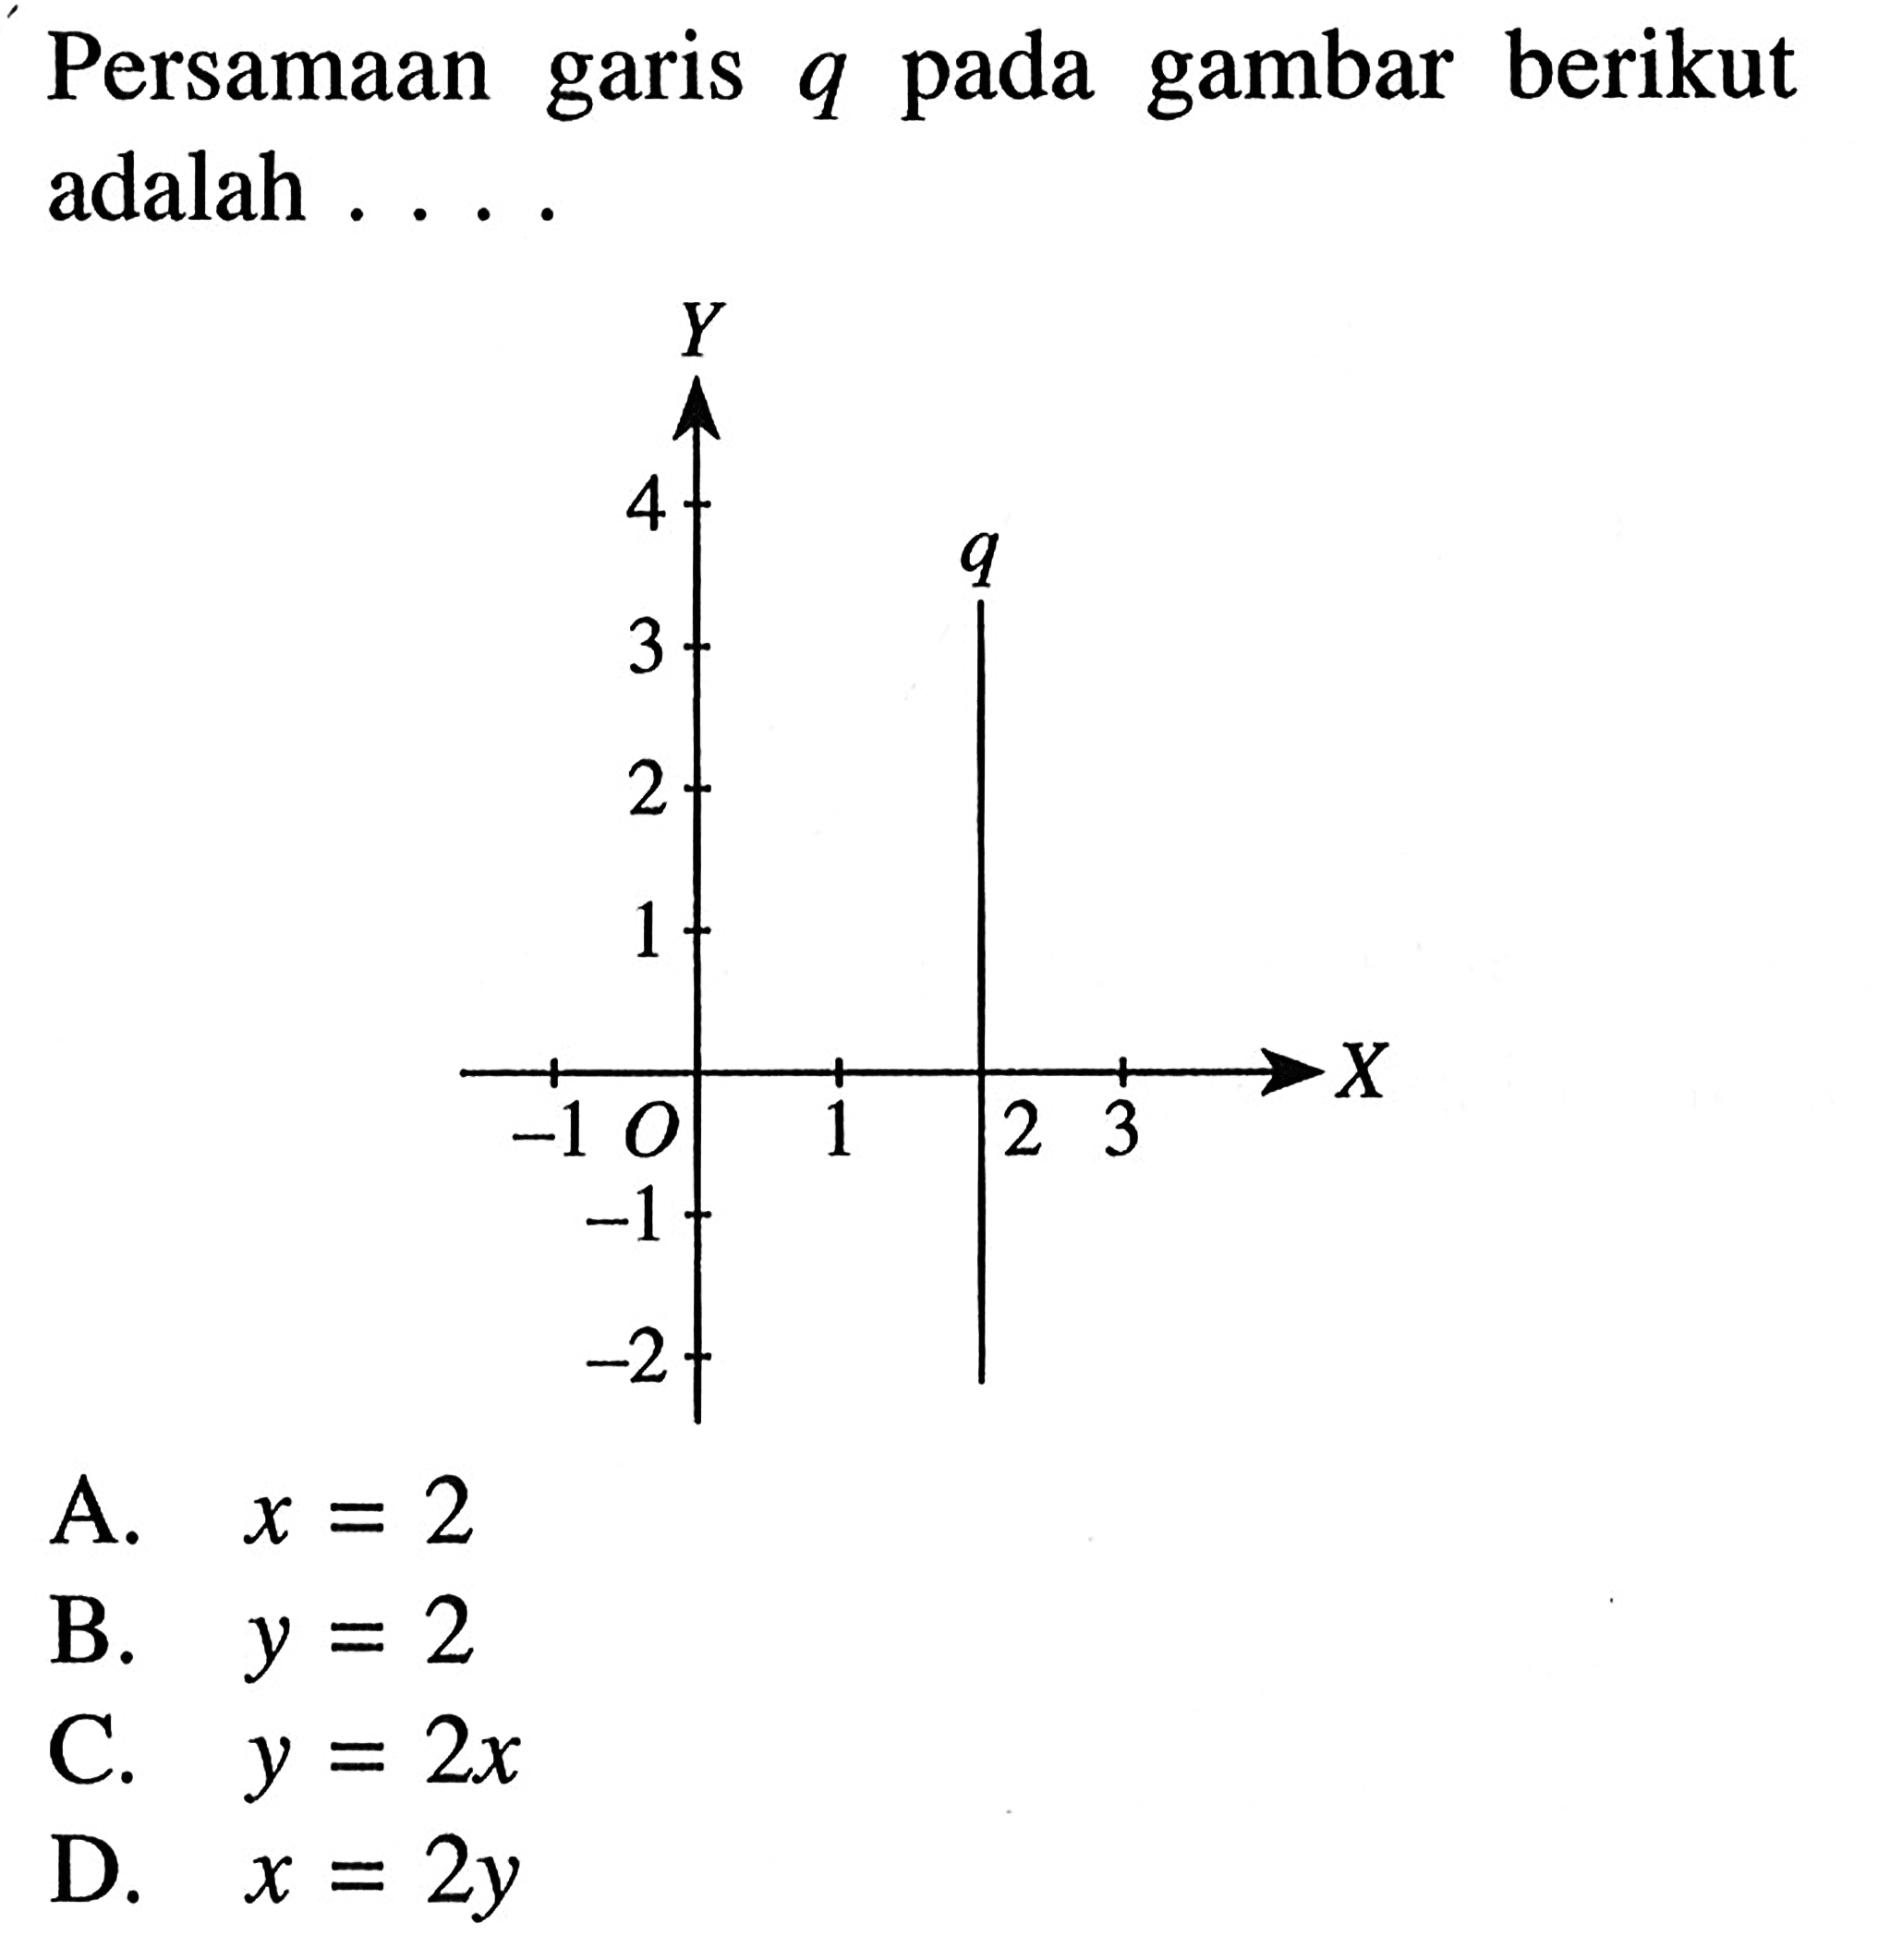 Persamaan garis q pada gambar berikut adalah a. x = 2 B. Y = 2 C. y = 2x D. x =2y